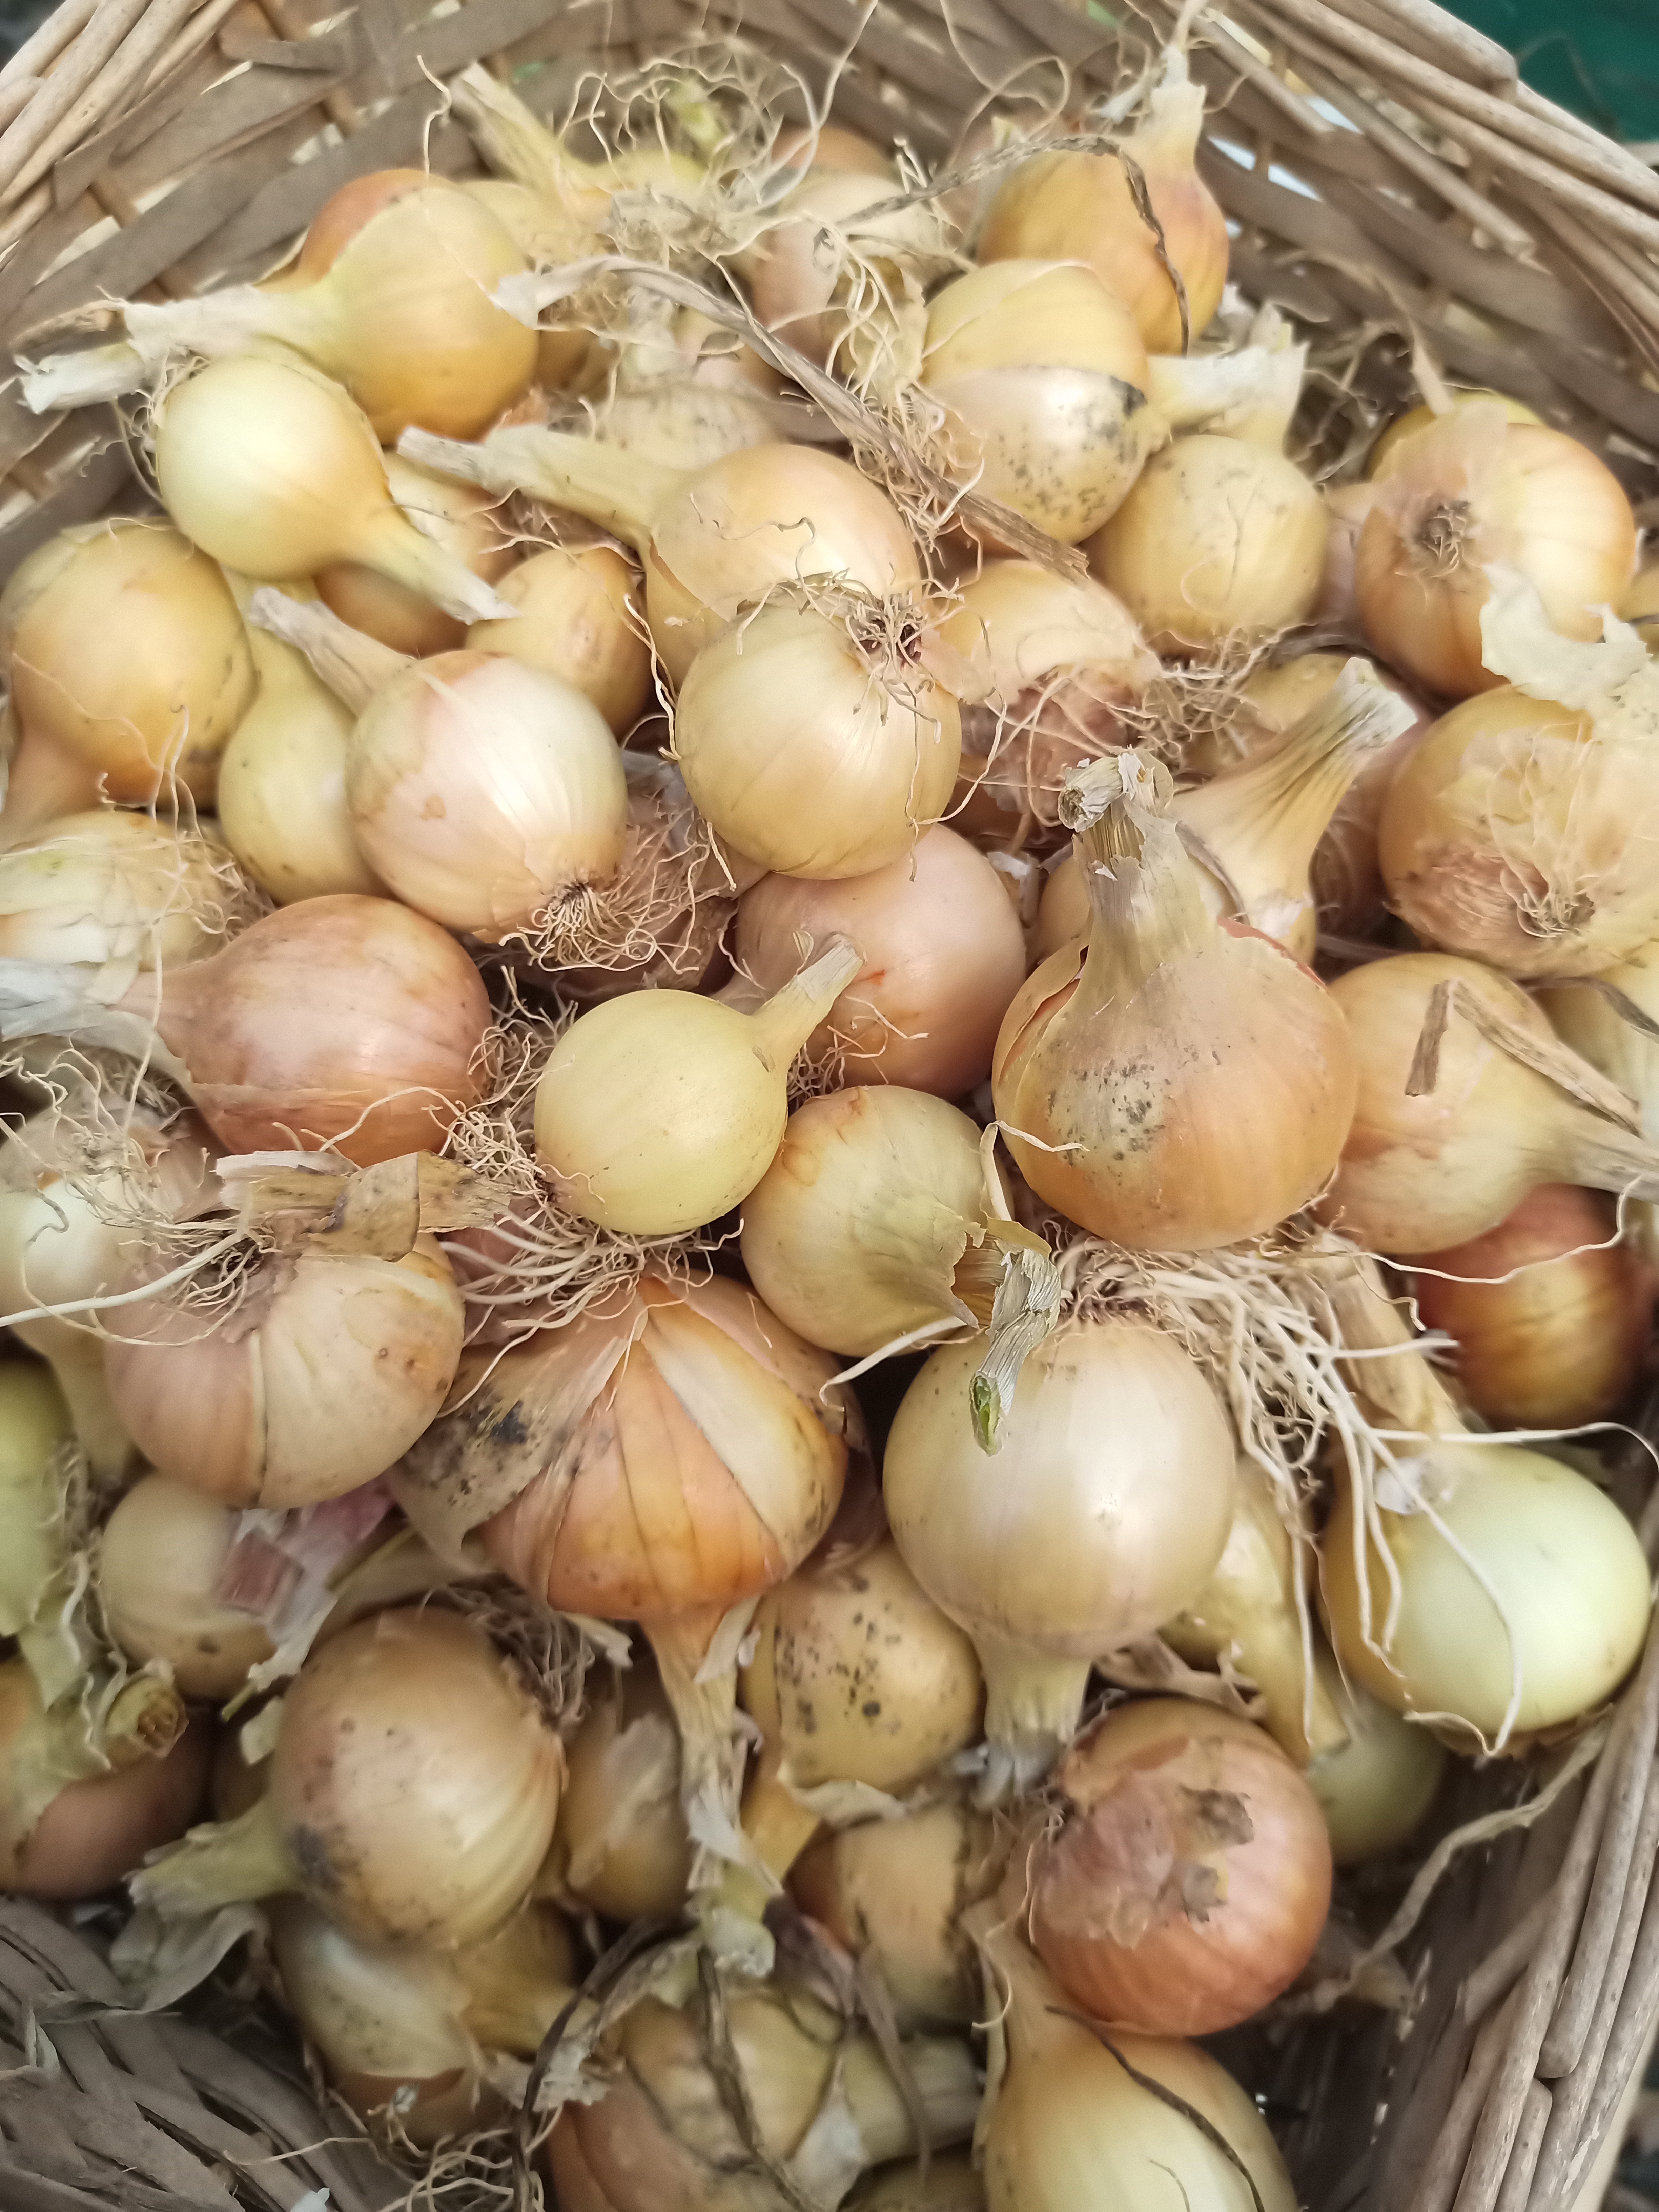 SPECIAL OFFER ! 10kg box Santerro onions ....see description